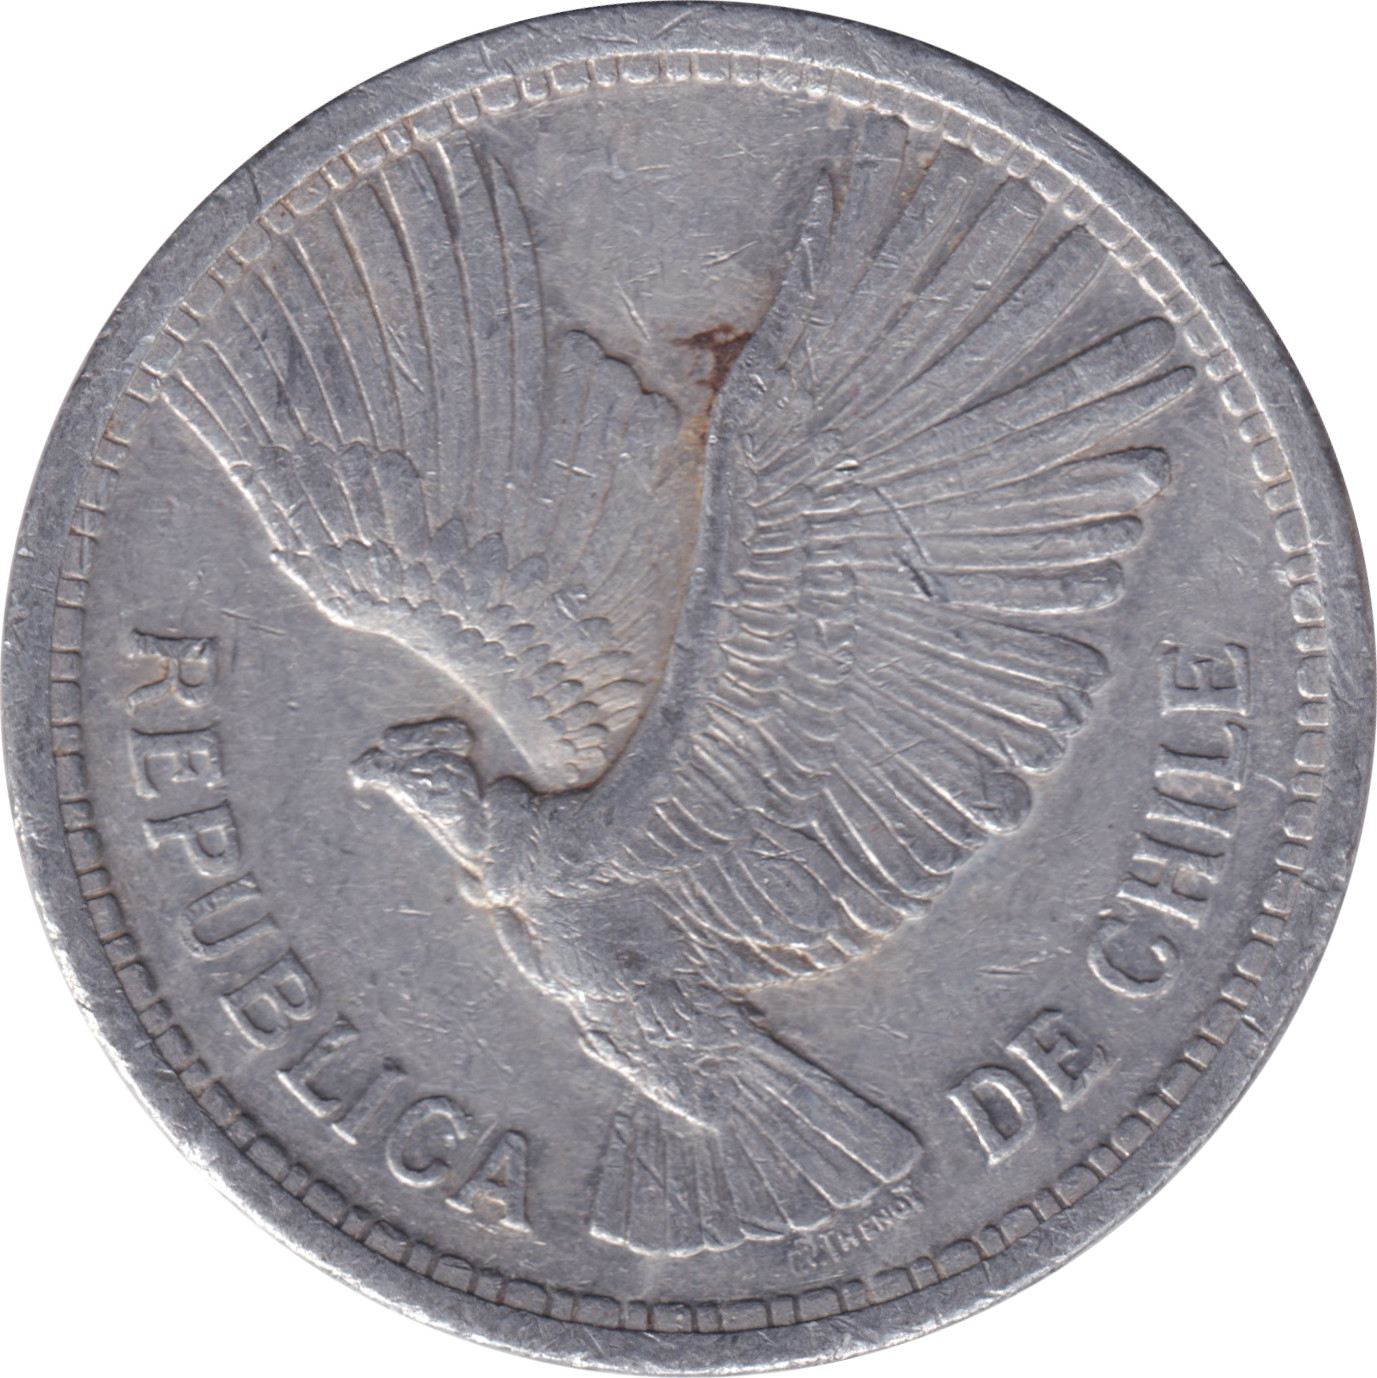 10 pesos - Condor